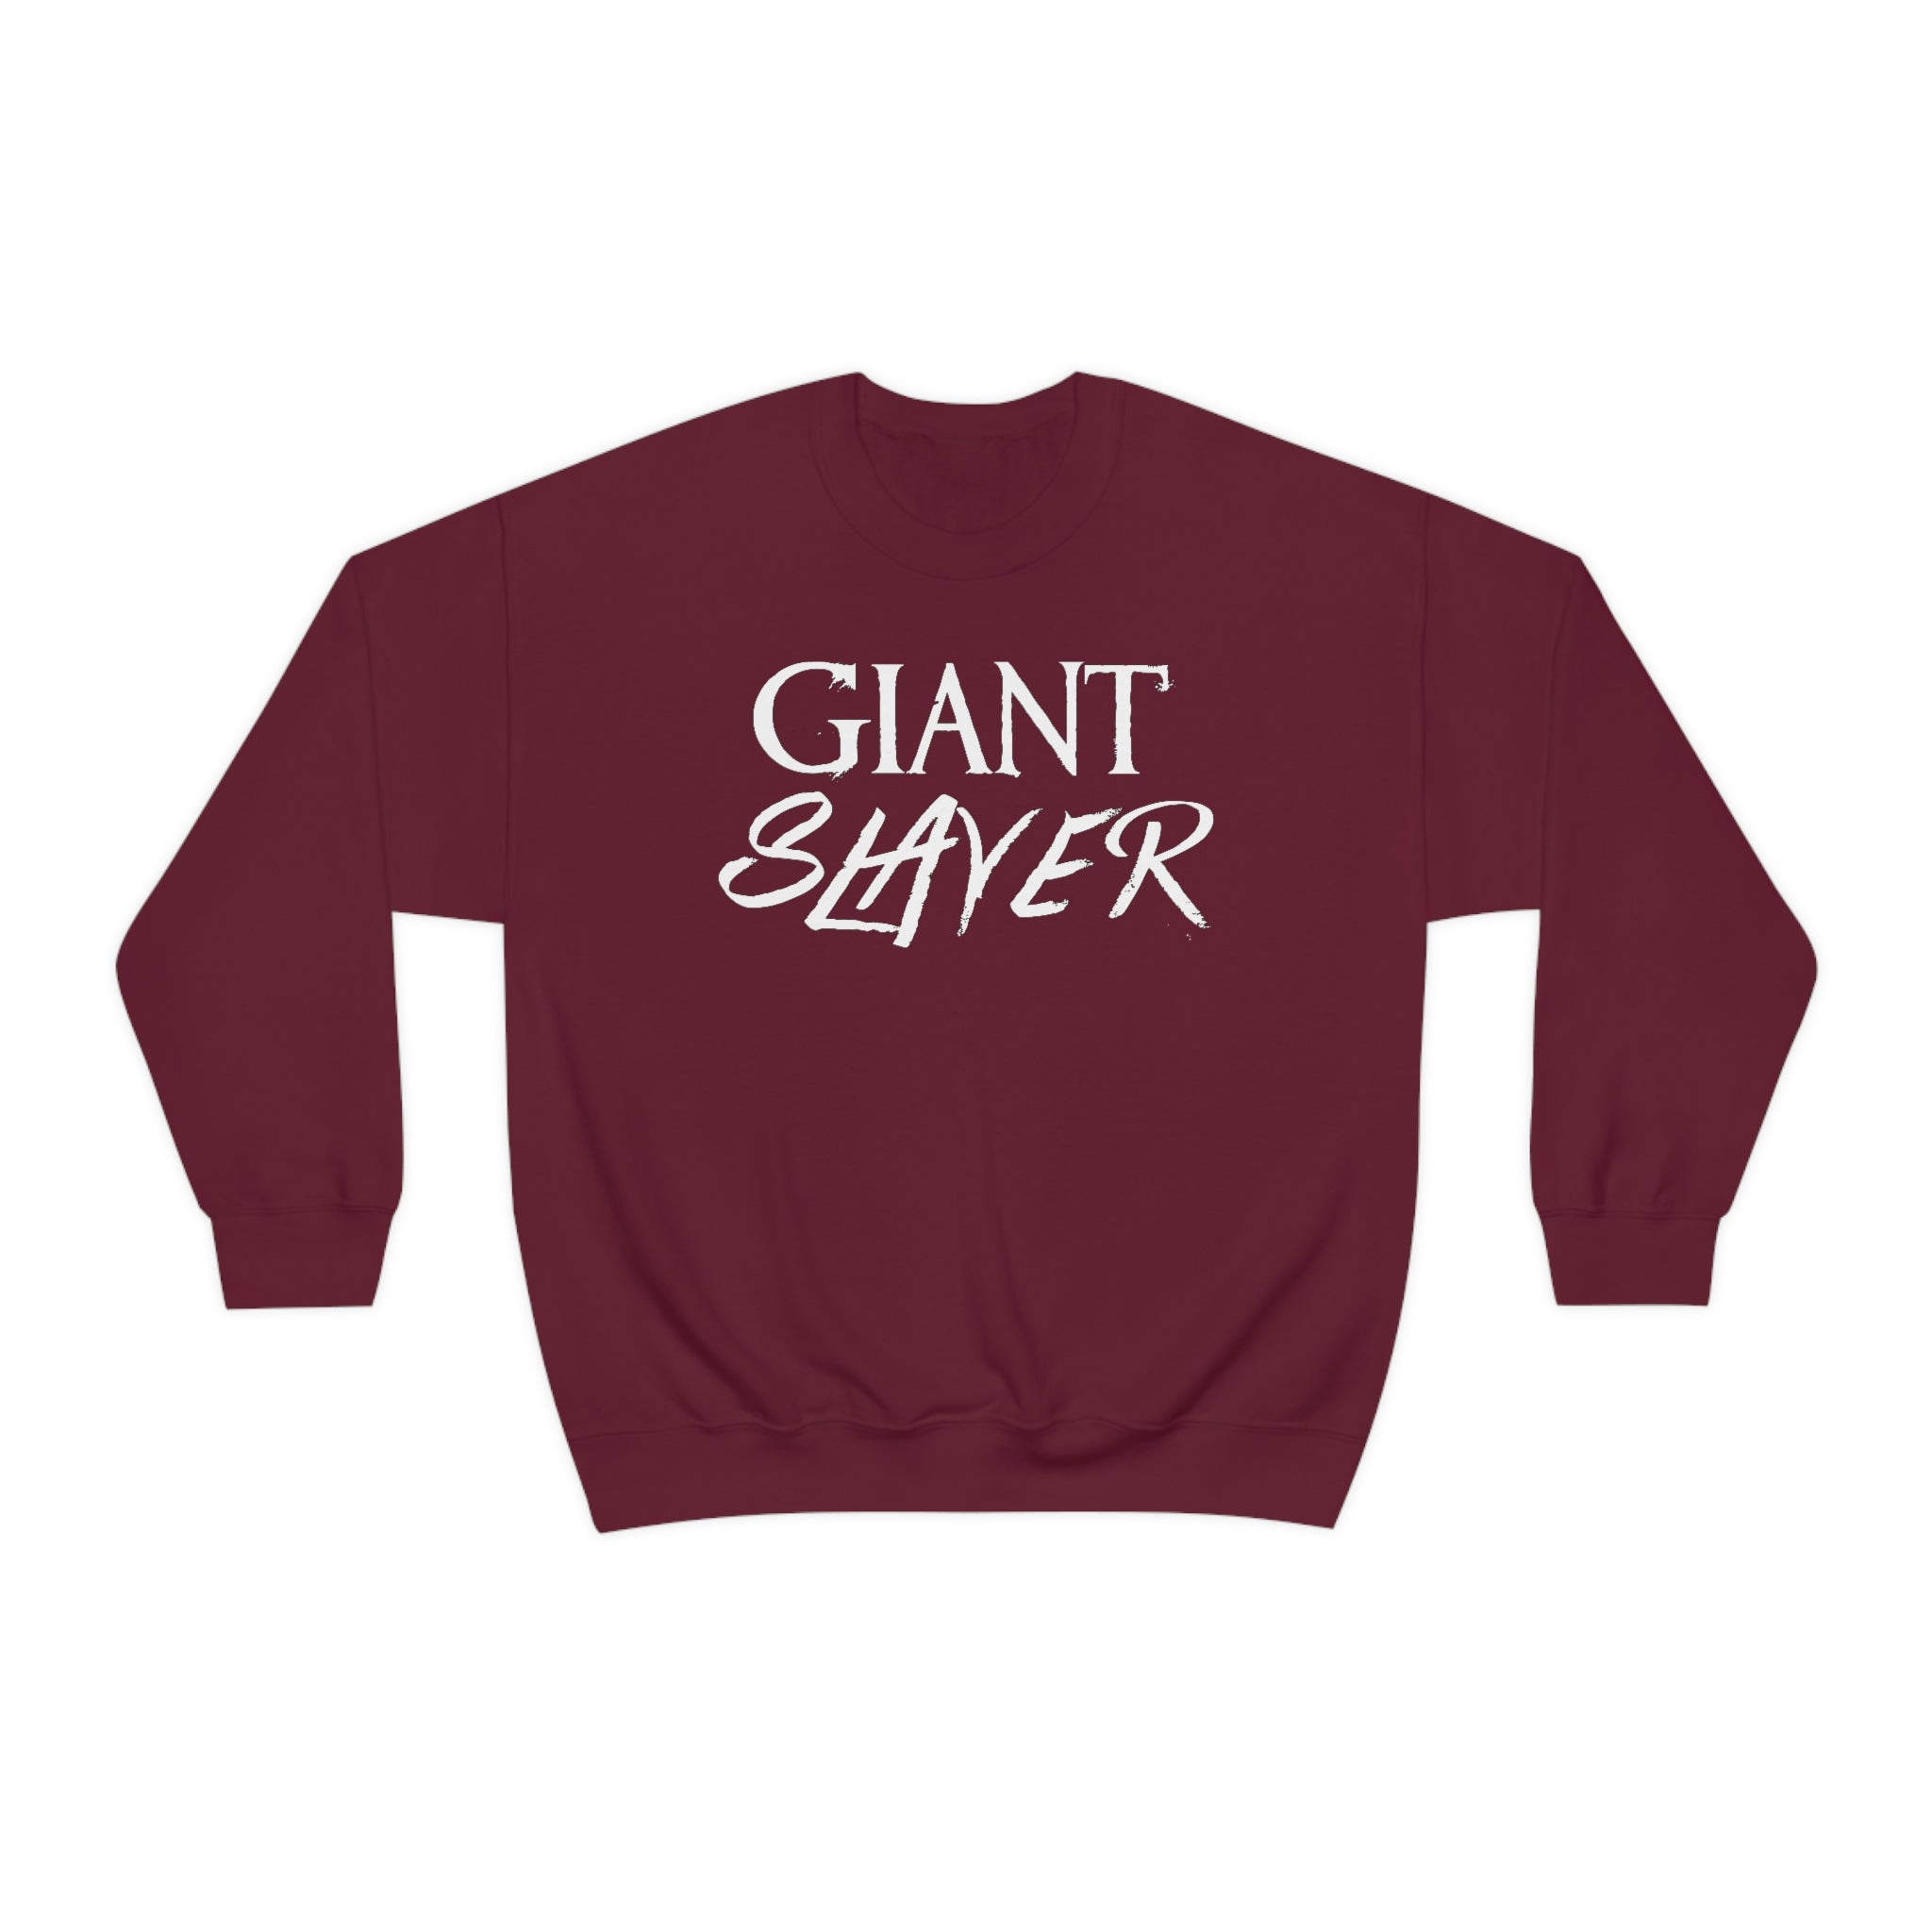 Giant Slayer Sweatshirt